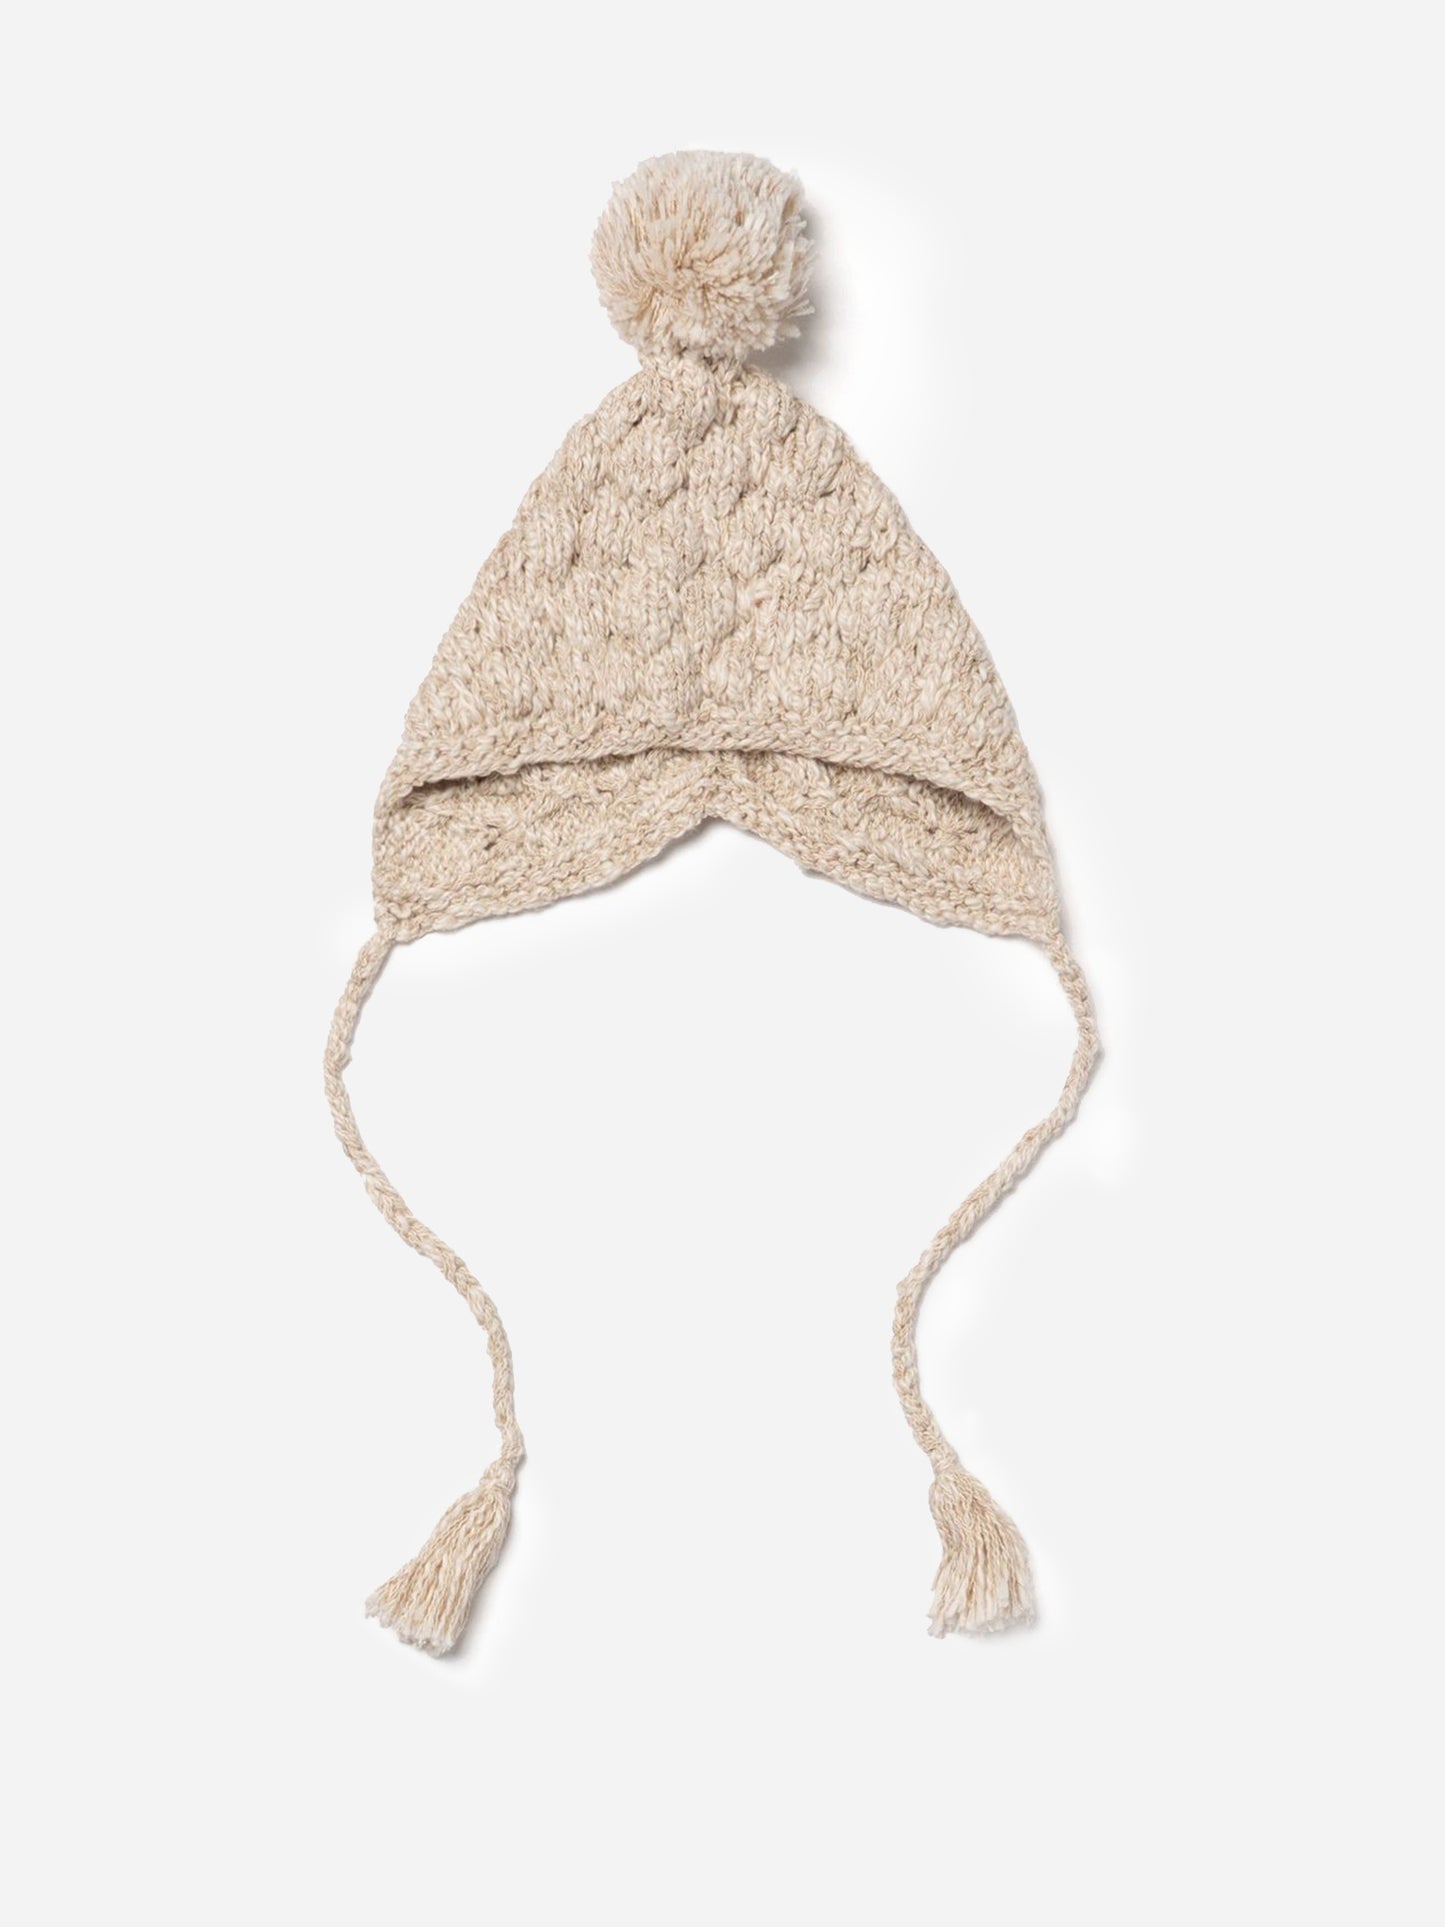 Lali Little Kids' Knitted Alpaca Hat